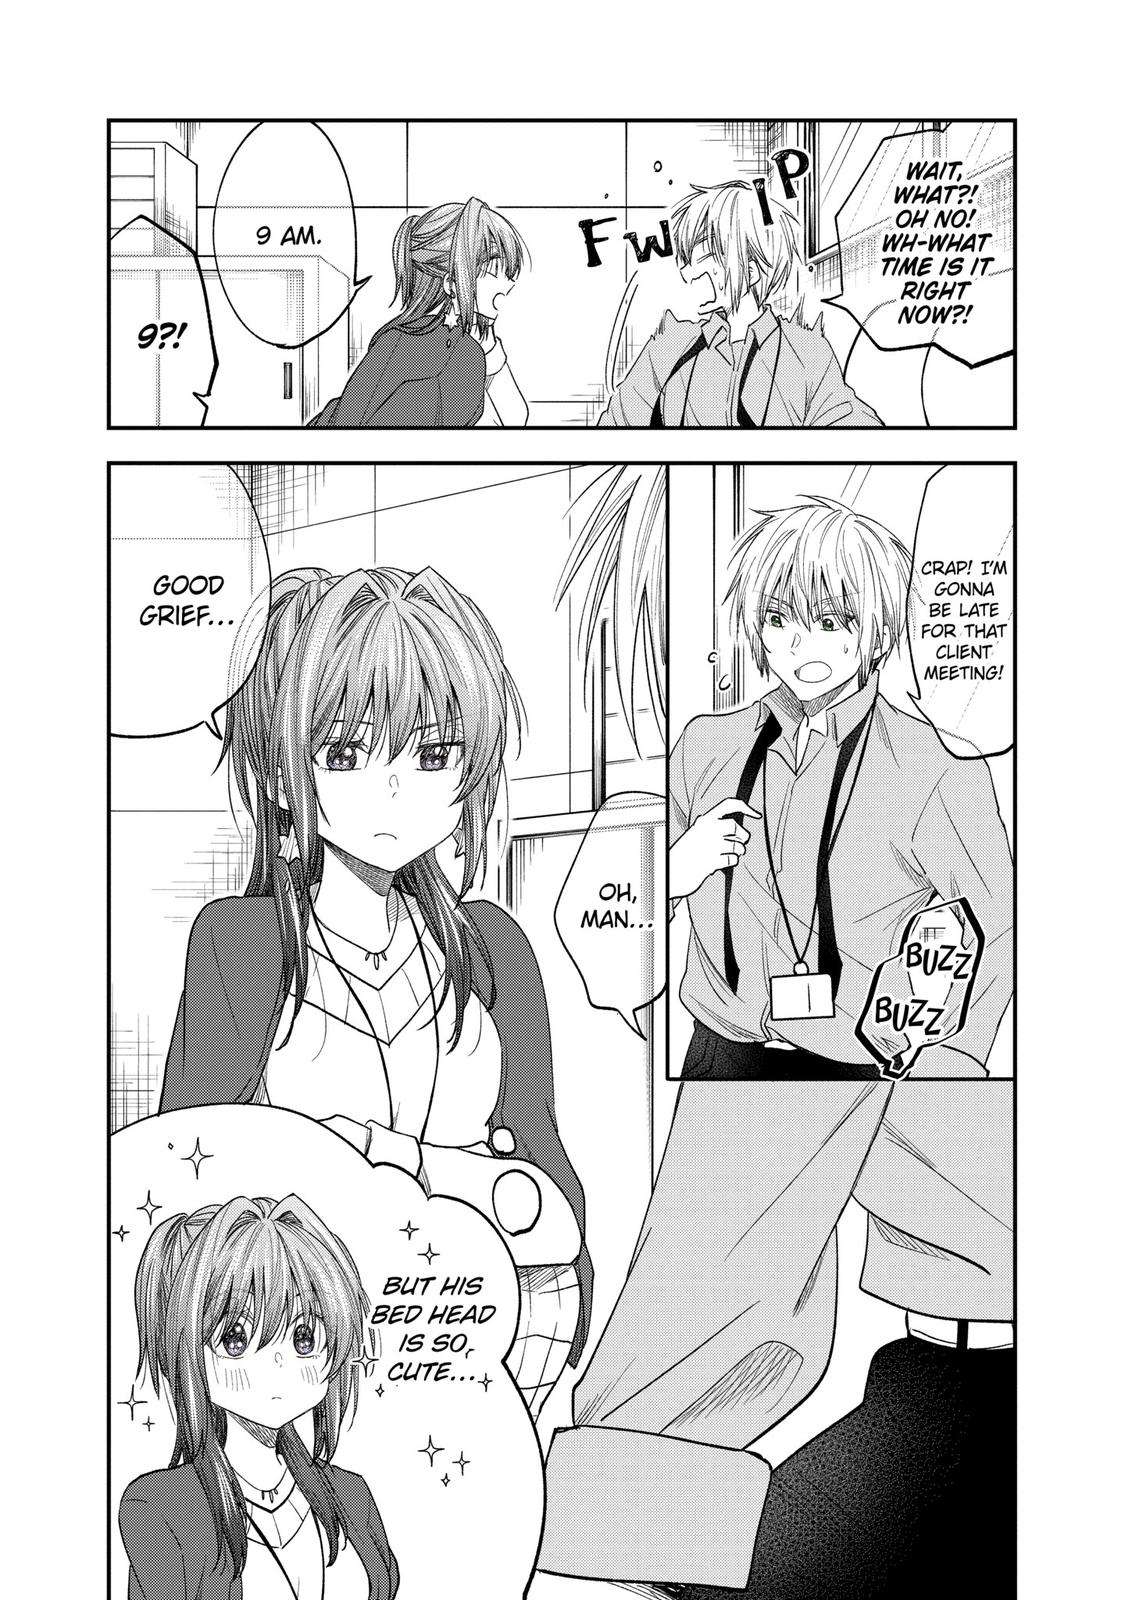 Awkward Senpai - chapter 40 - #2